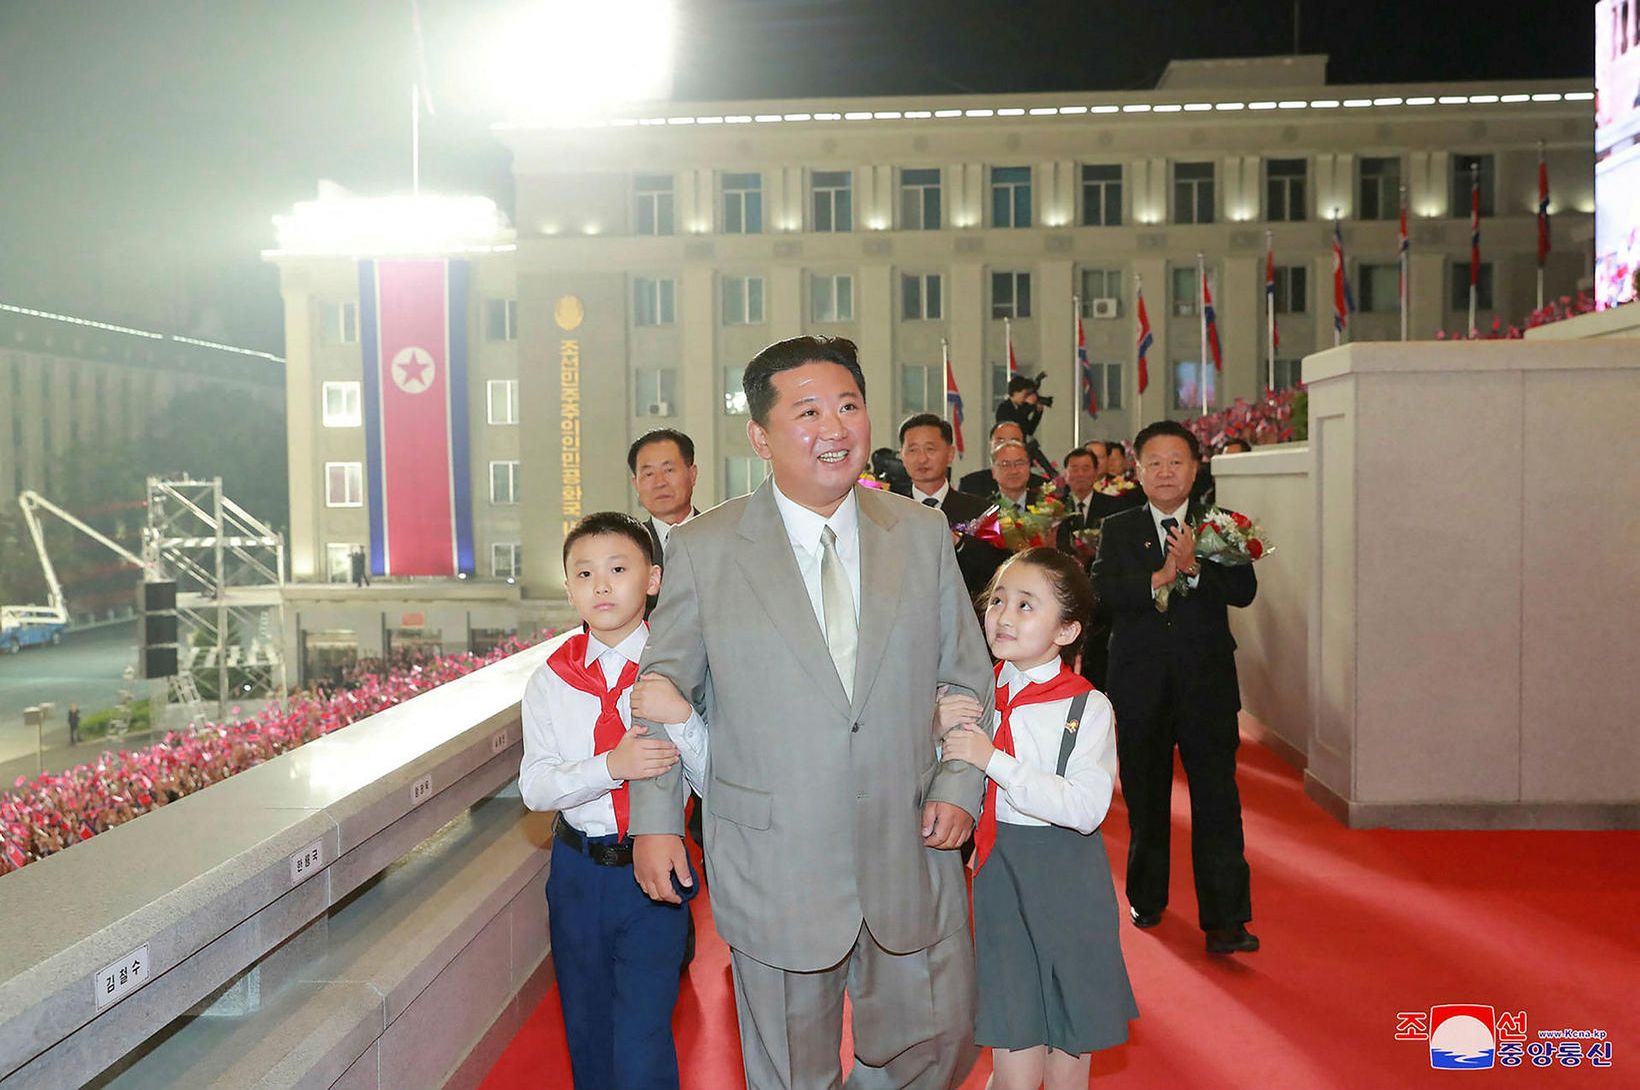 Kim Jong Un sólbrúnn og spengilegur